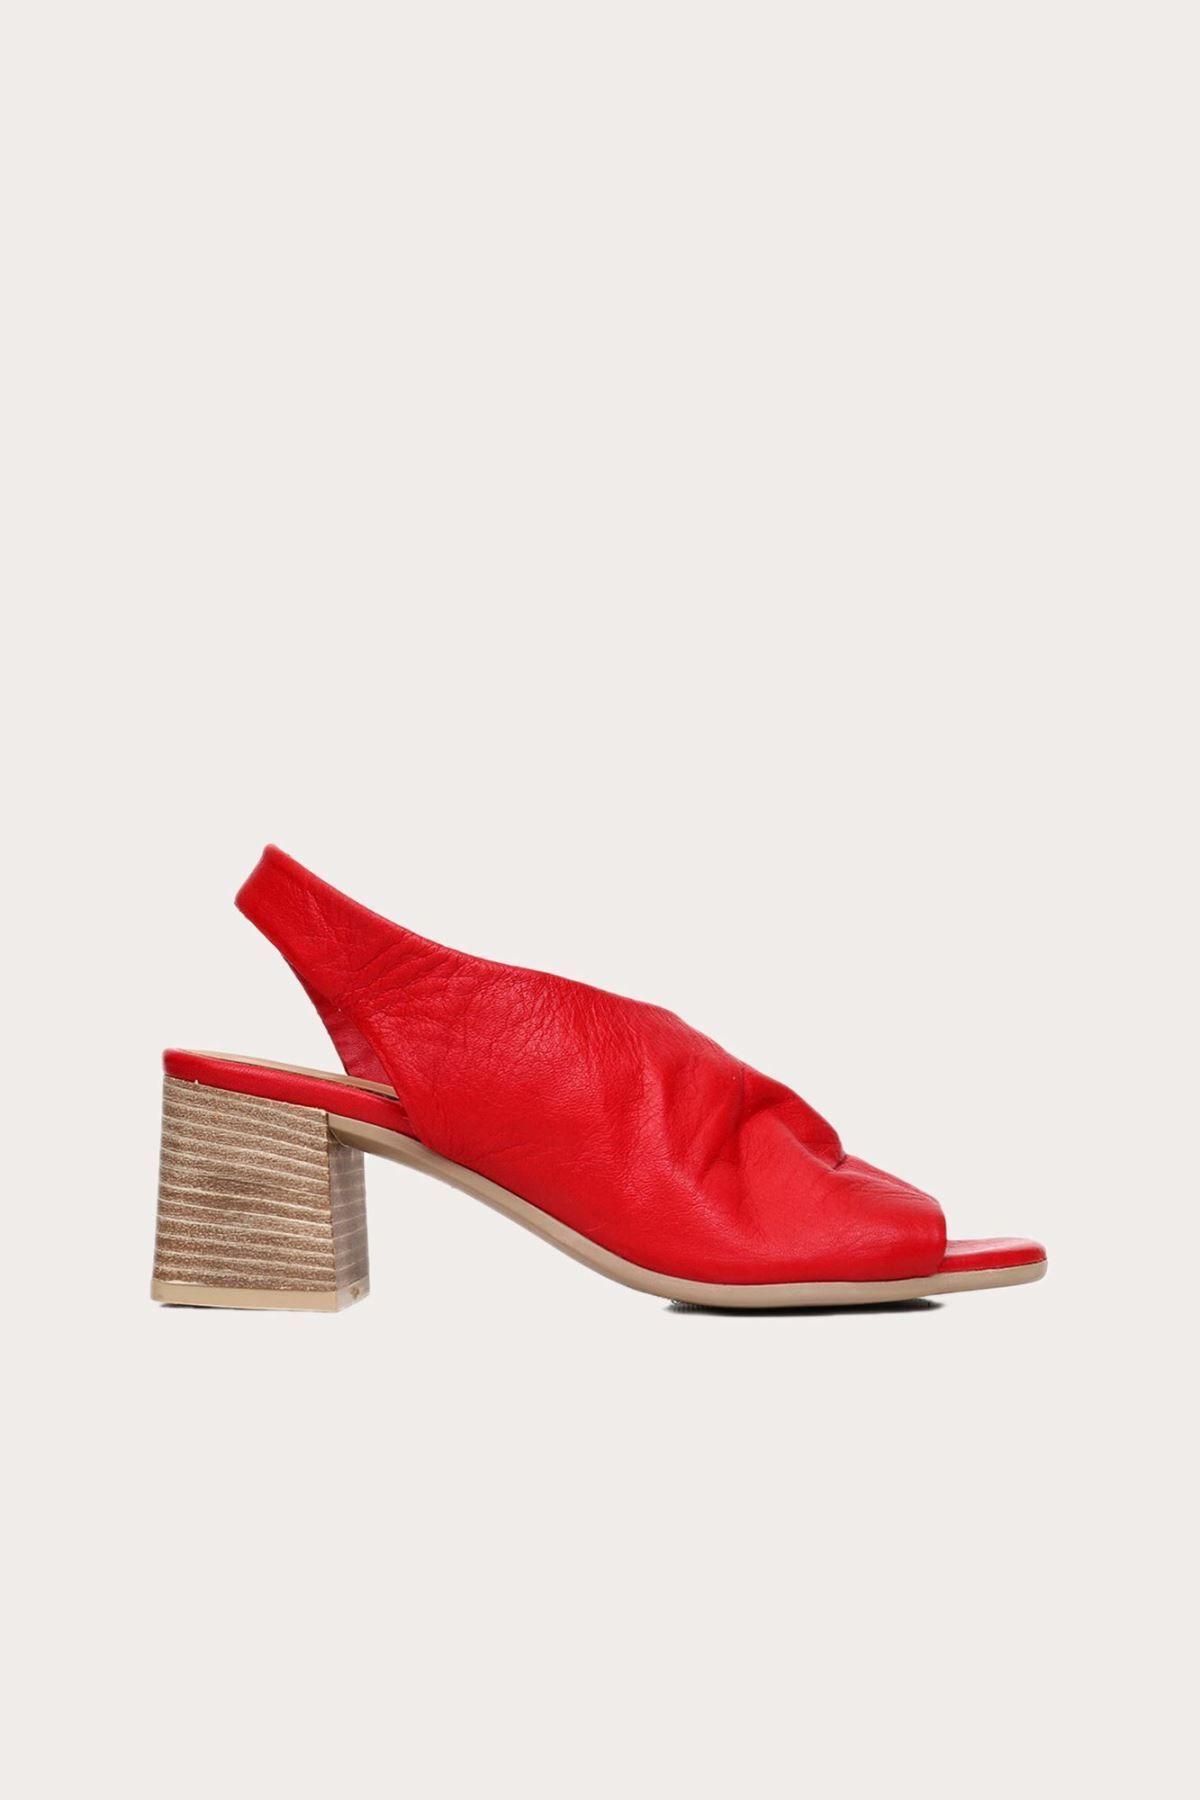 BUENO Shoes Kırmızı Deri Kadın Topuklu Sandalet